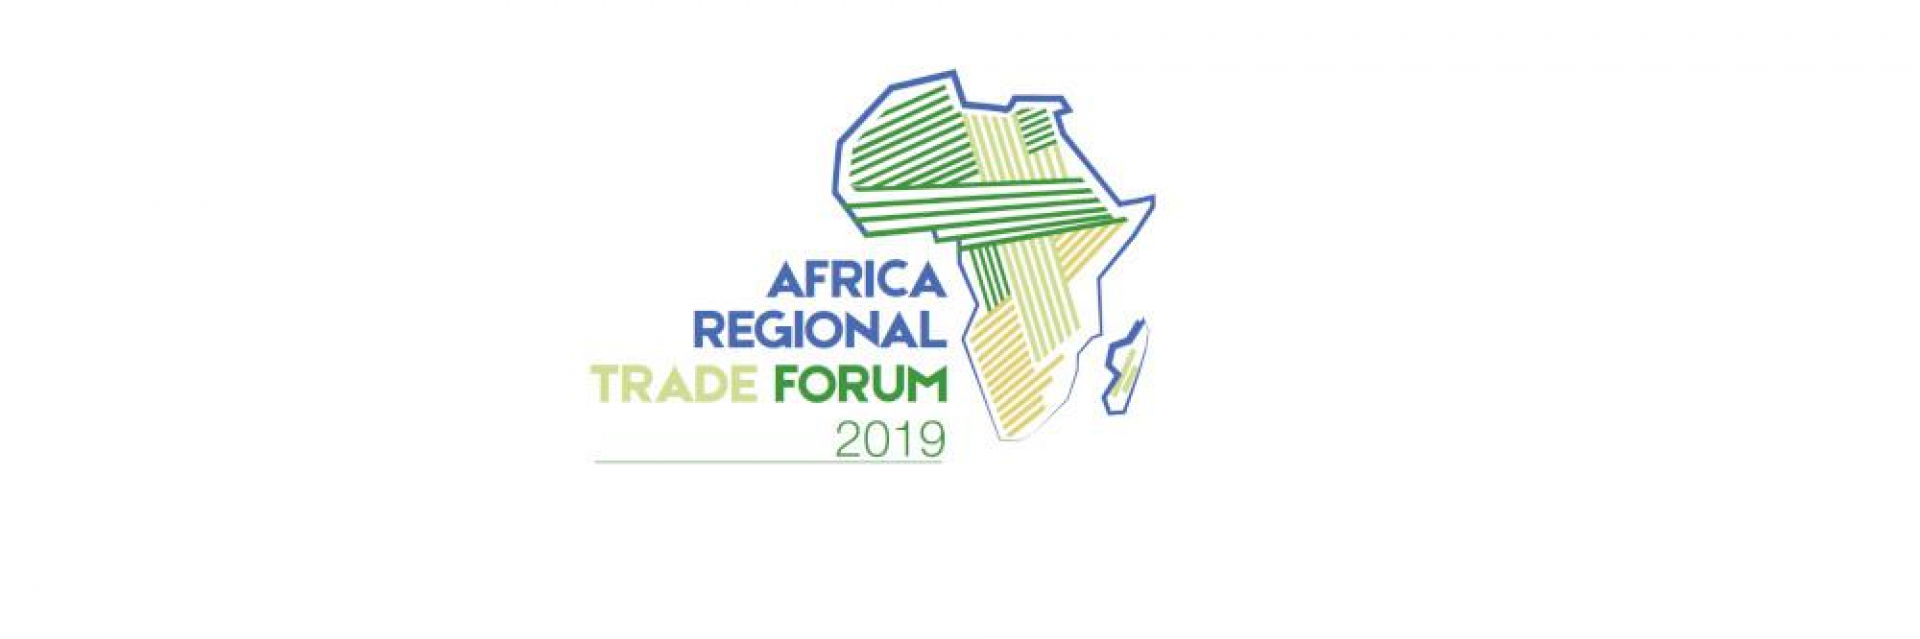 Forum régional sur le commerce pour l’Afrique de l’Ouest et l’Afrique centrale